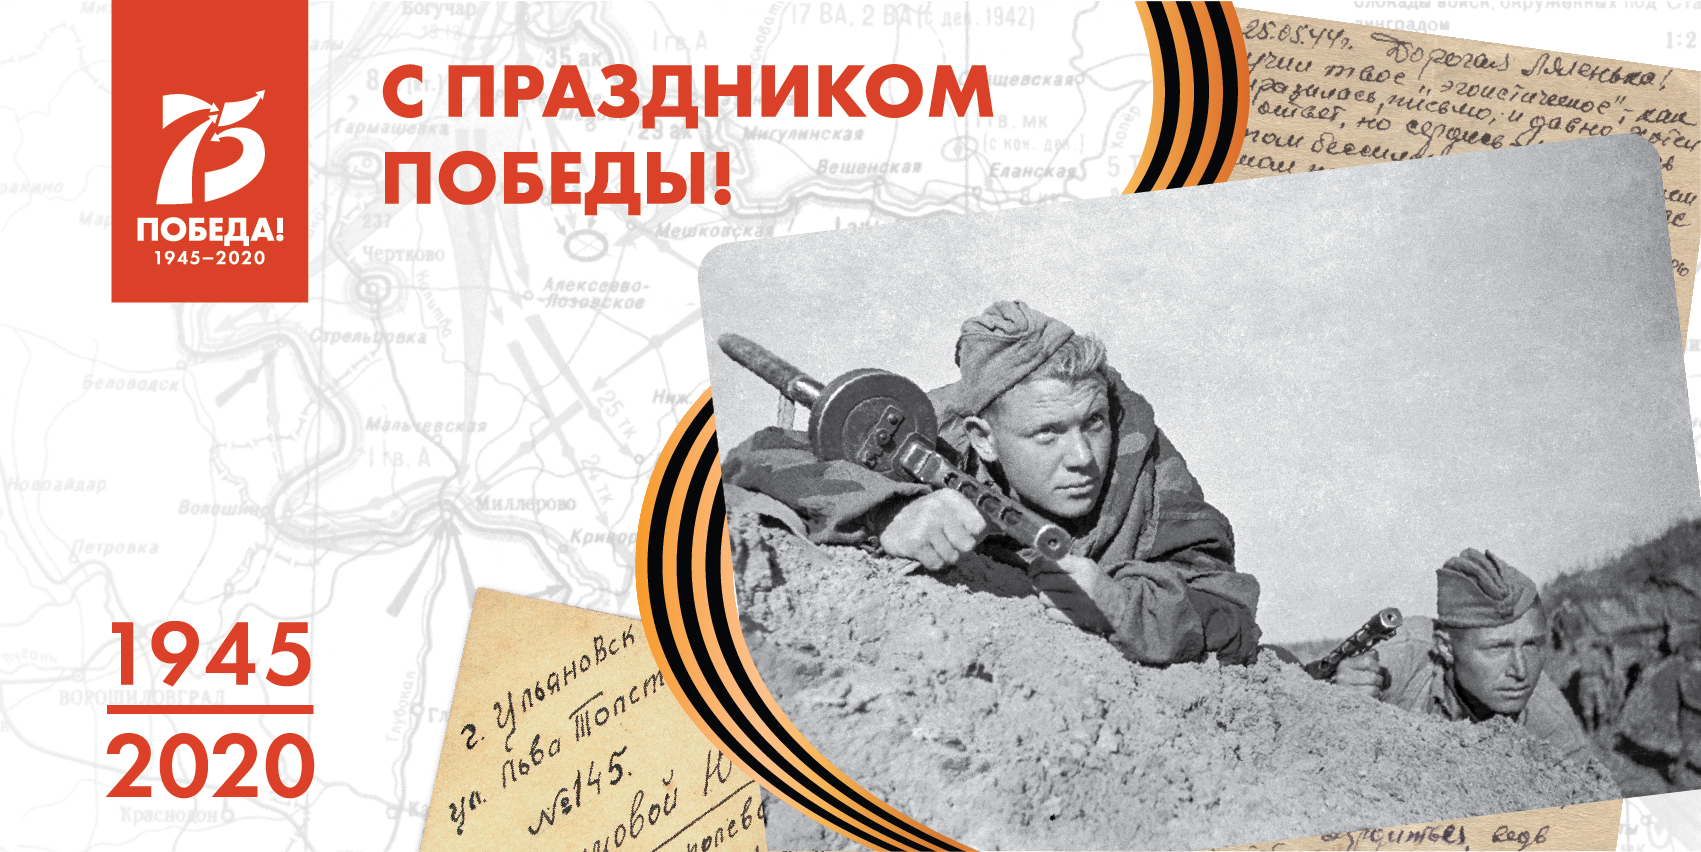 75-я годовщина Победы в Великой Отечественной войне 1941-1945 гг